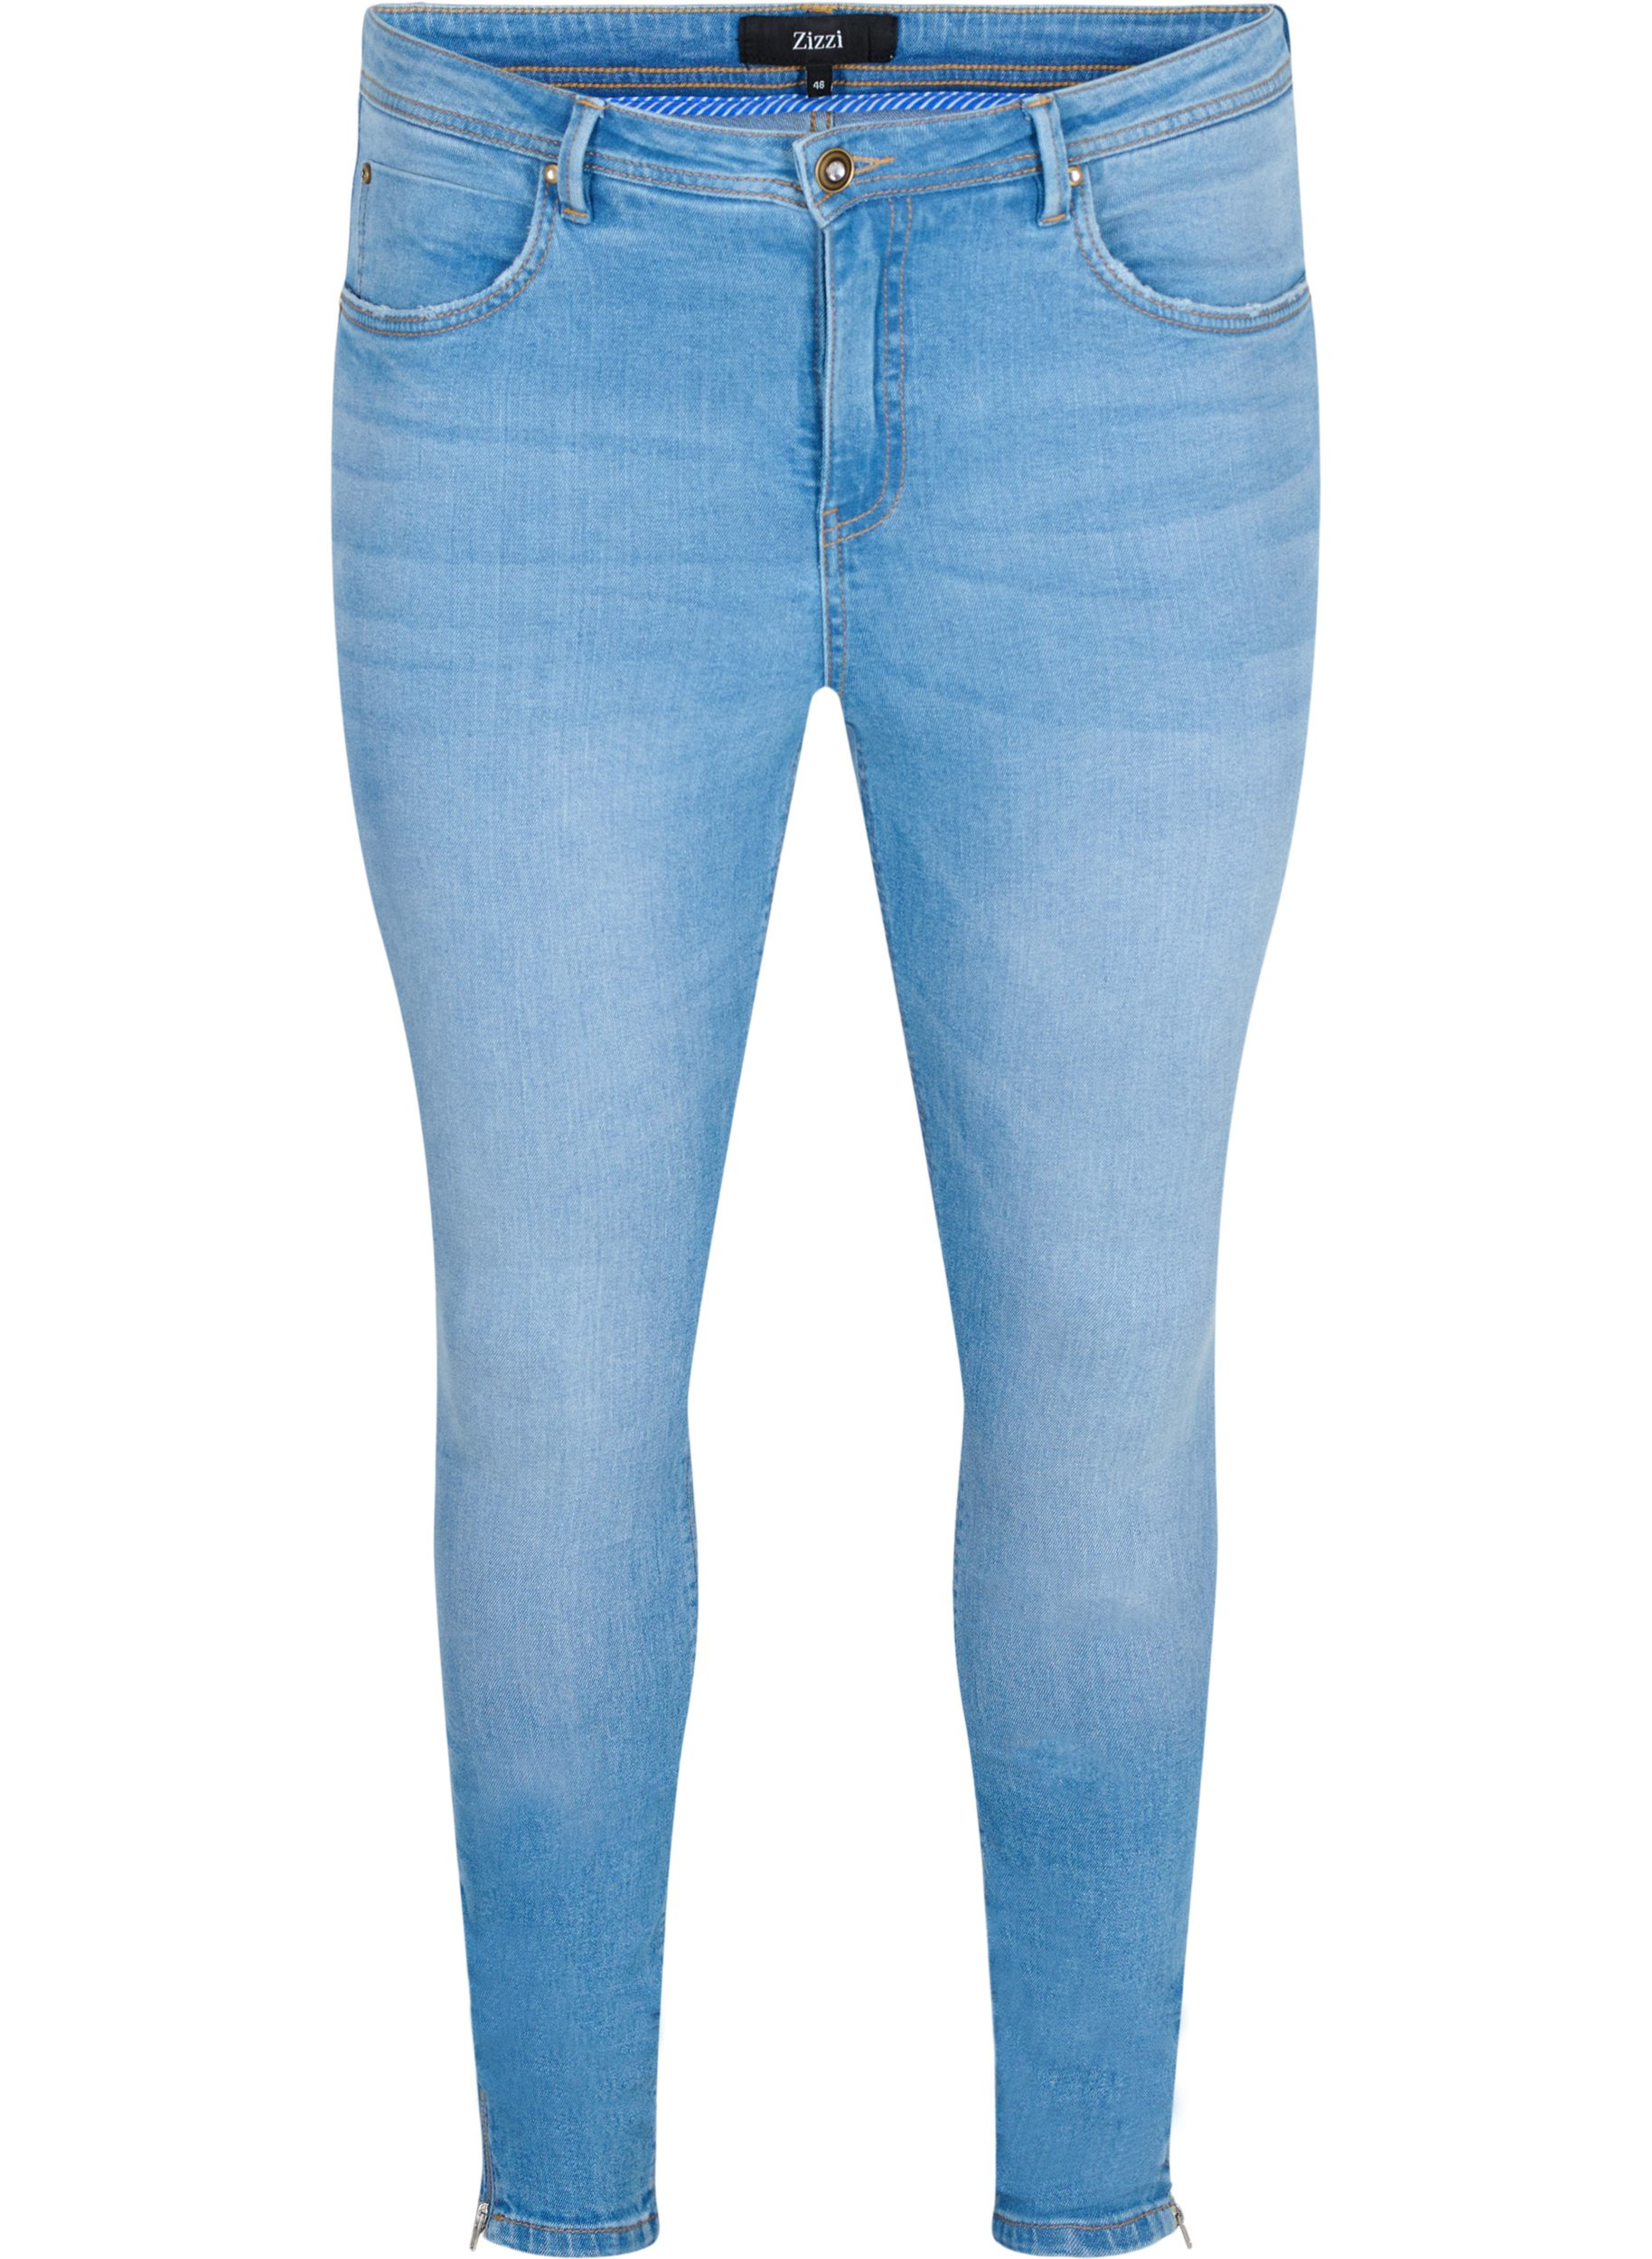 Zizzi Amy Damen Jeans Super Slim Jeanshose Stretch Hose Große Größen 42-56